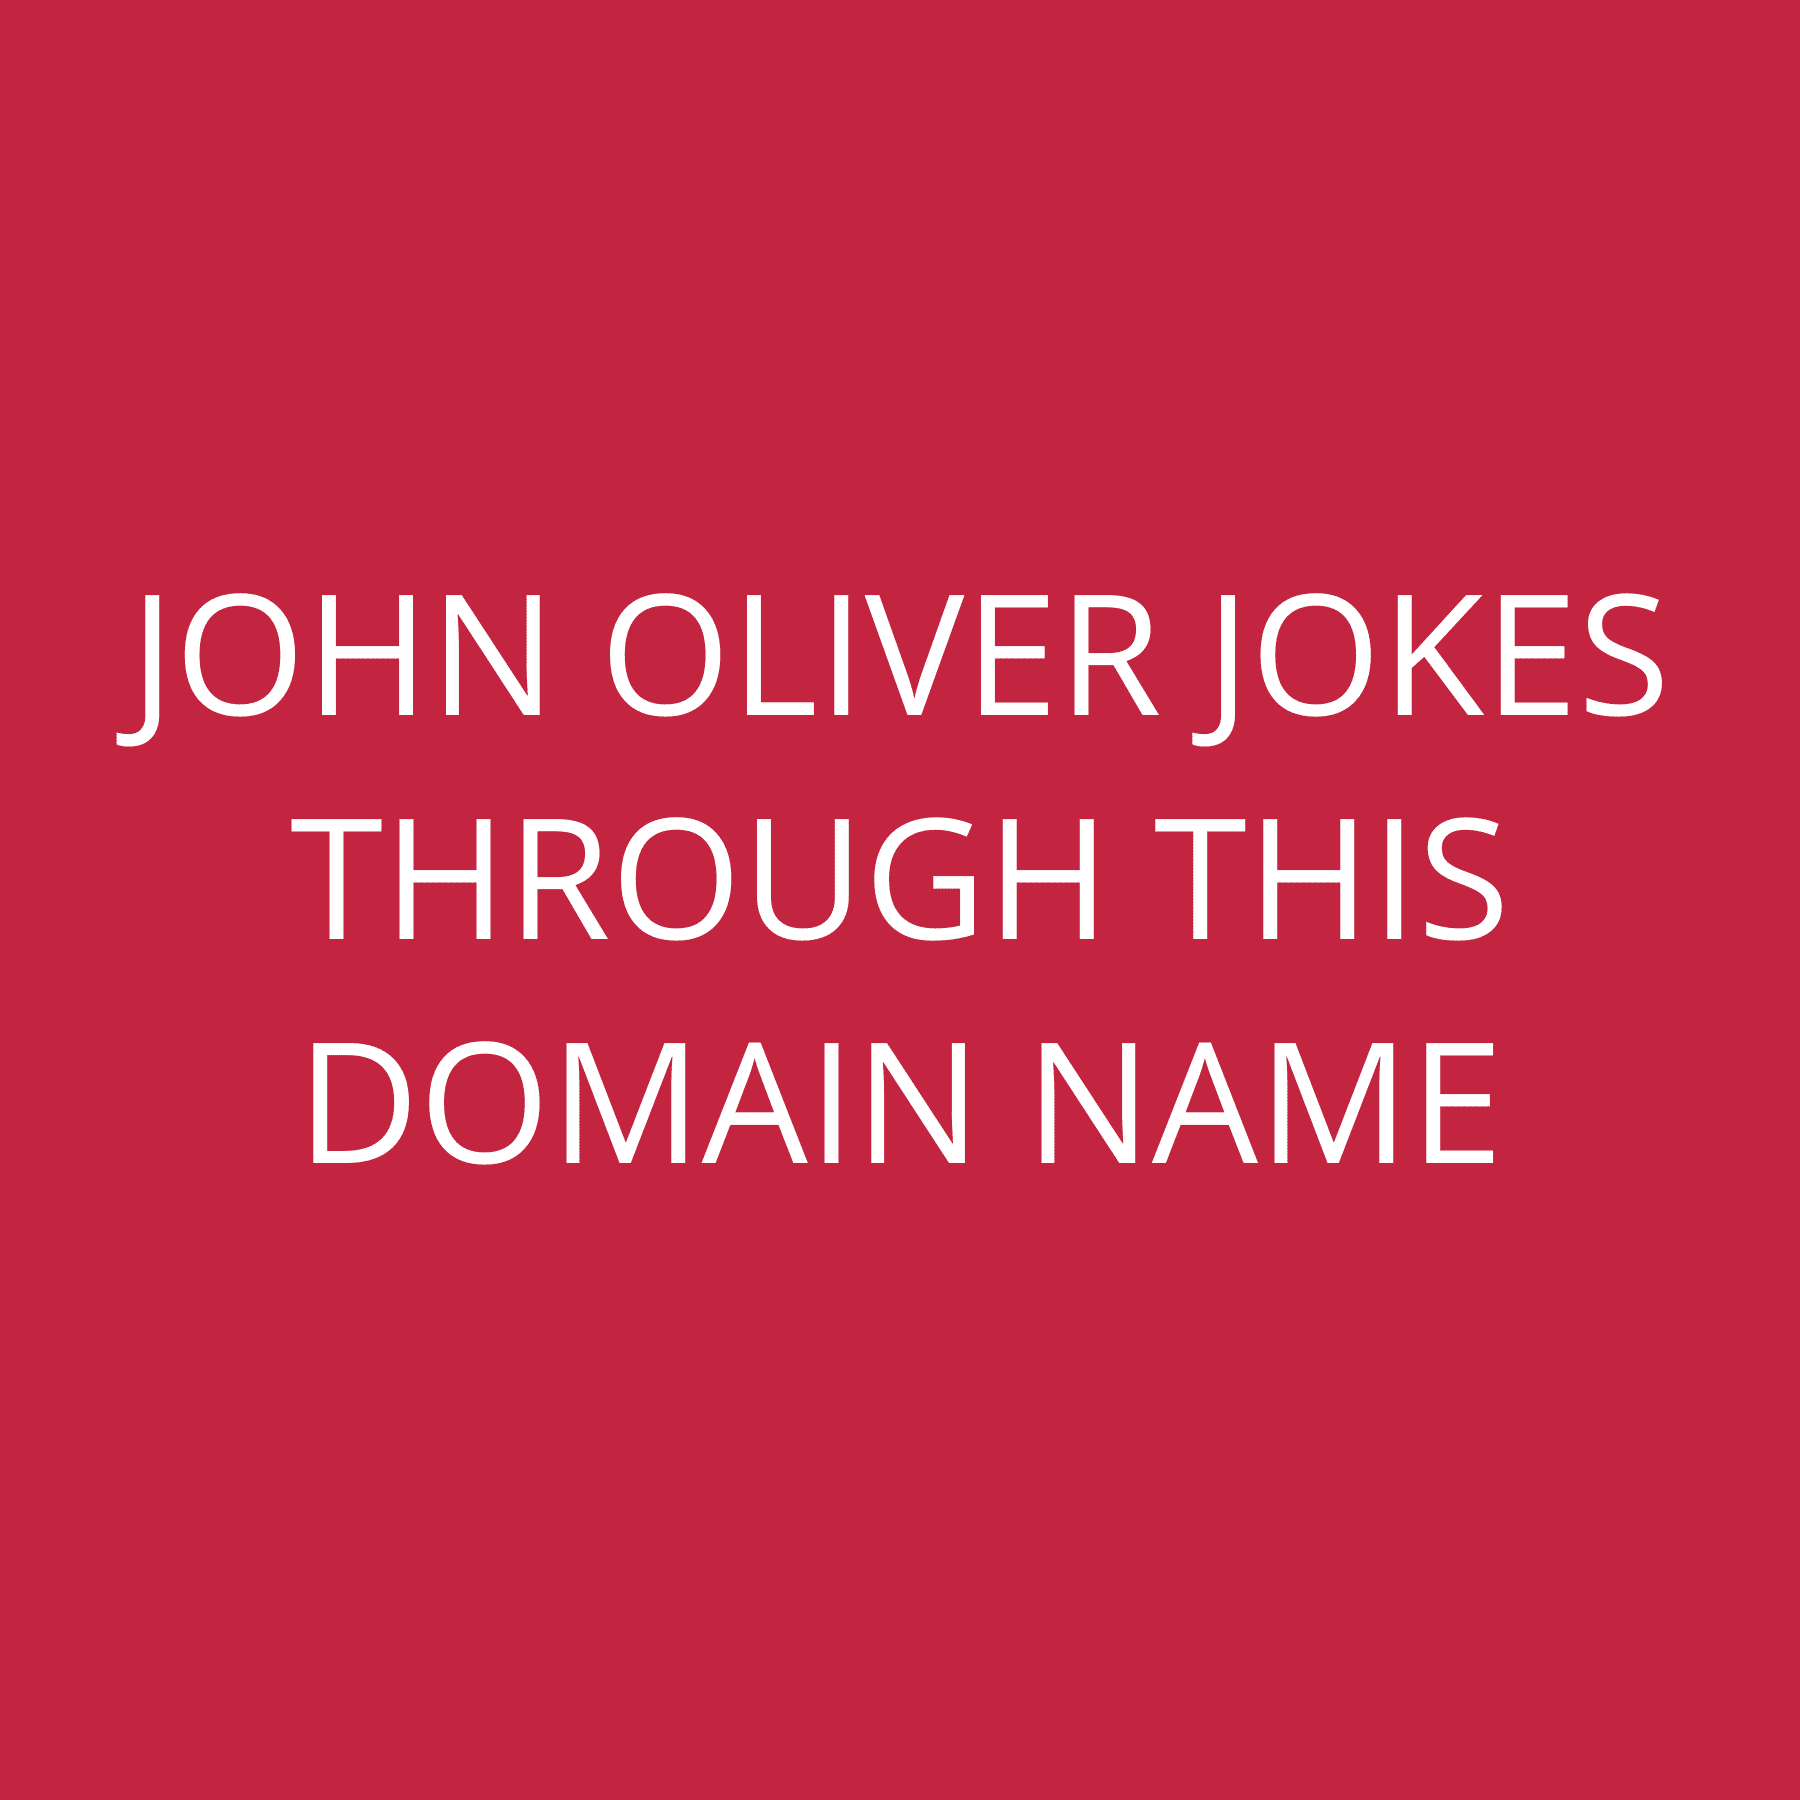 John Oliver jokes through this domain name